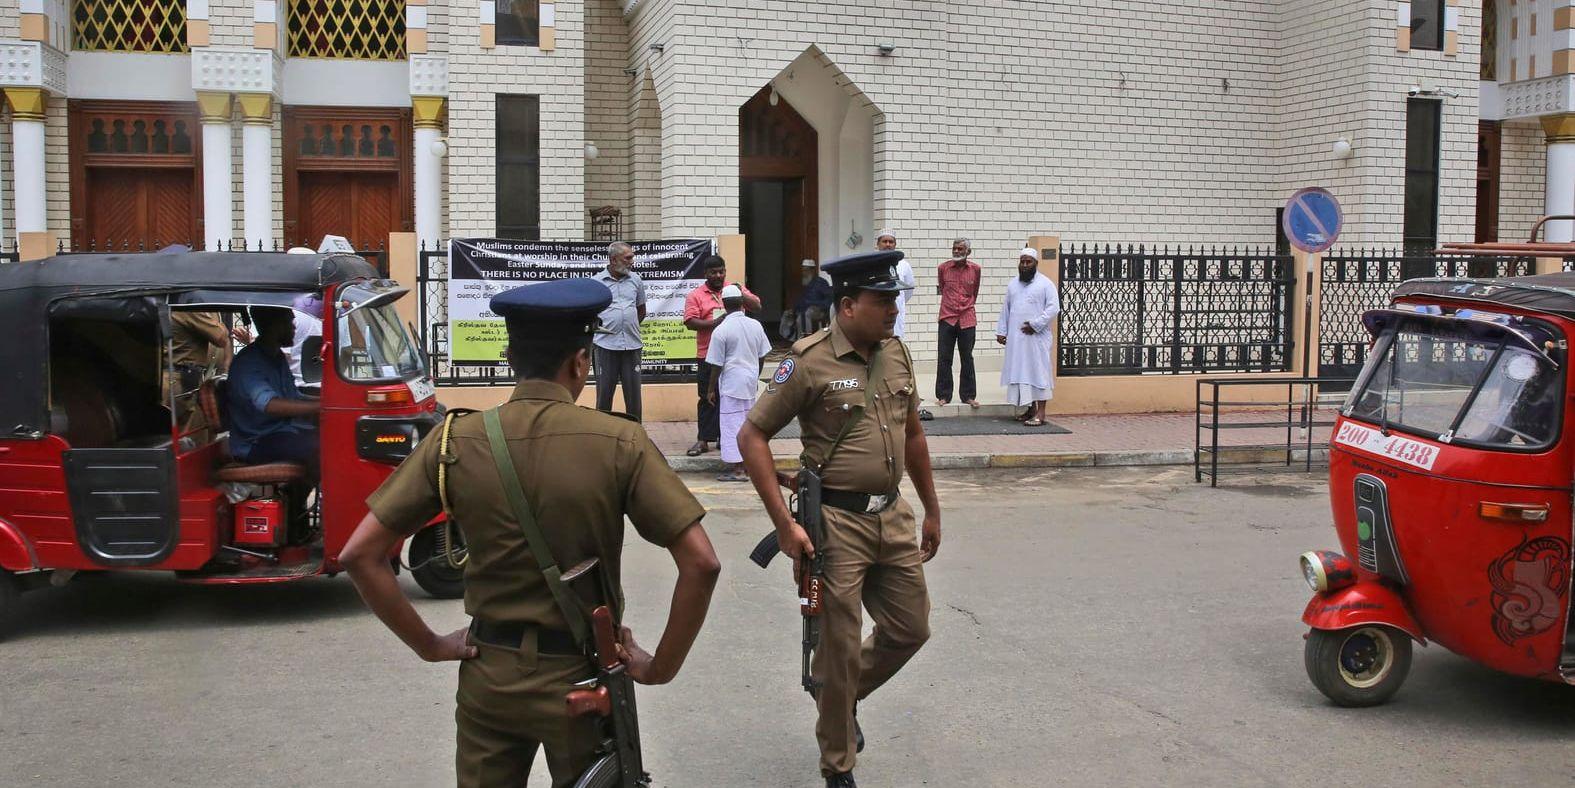 Säkerheten är förhöjd i Sri Lanka efter terrordåden. Bland annat vid landets moskéer, som pekas ut som potentiella måltavlor för hämndattacker.